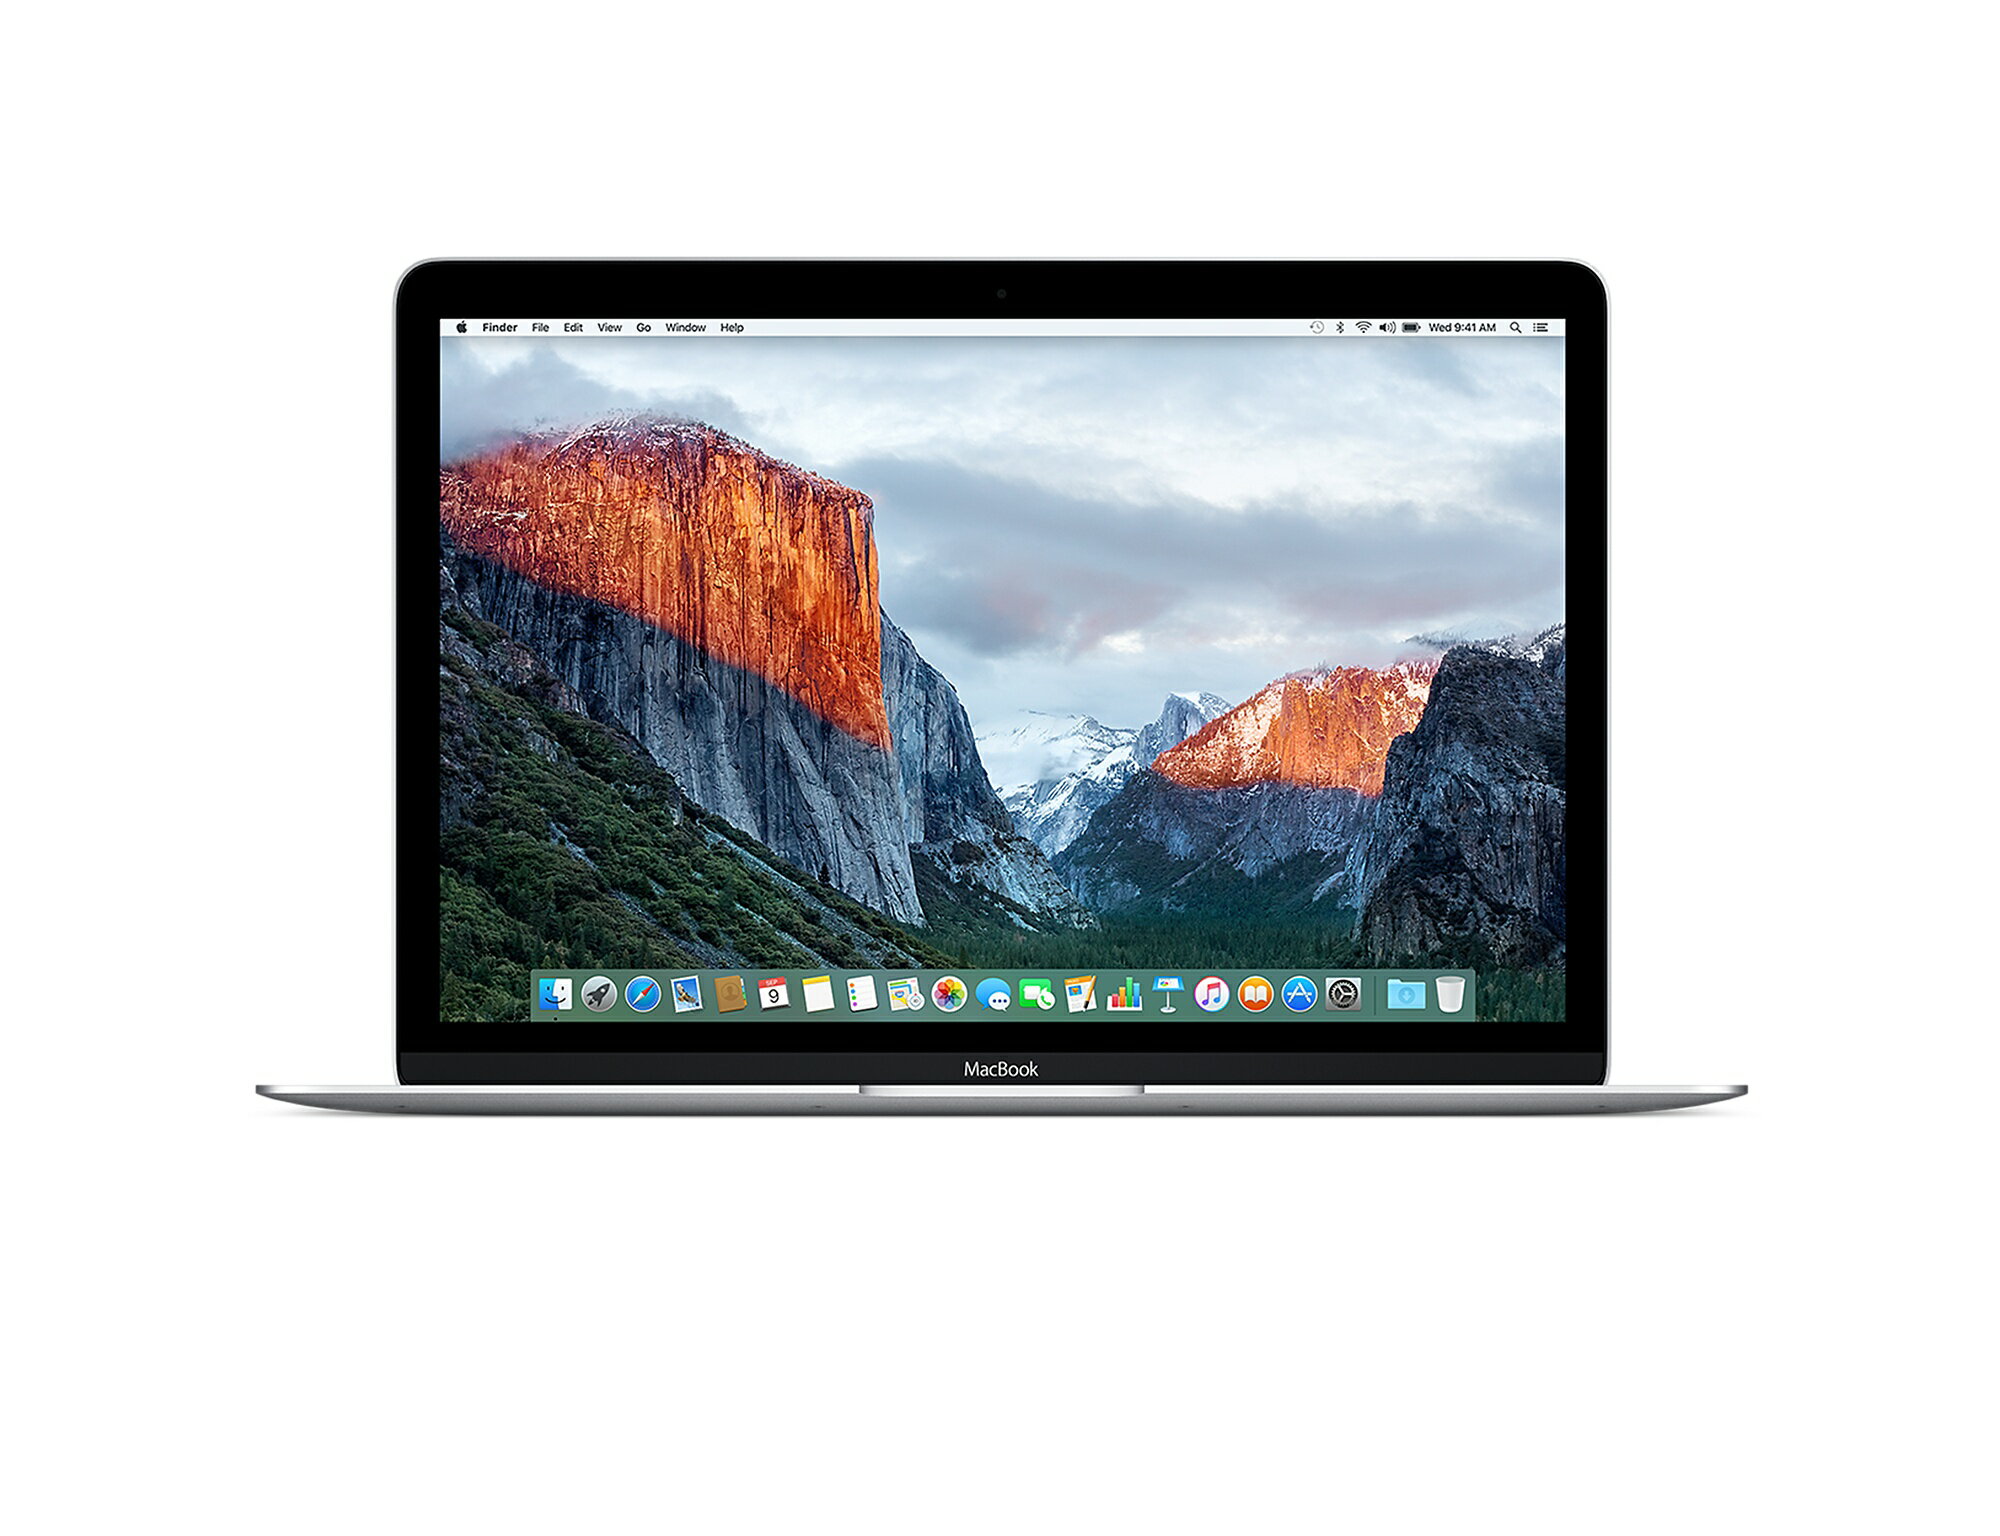 【限量現金促銷價】Apple 蘋果 MacBook 12吋/1.1GHz/8GB/512G SSD/四色(銀色/太空灰/金色/玫瑰金)  